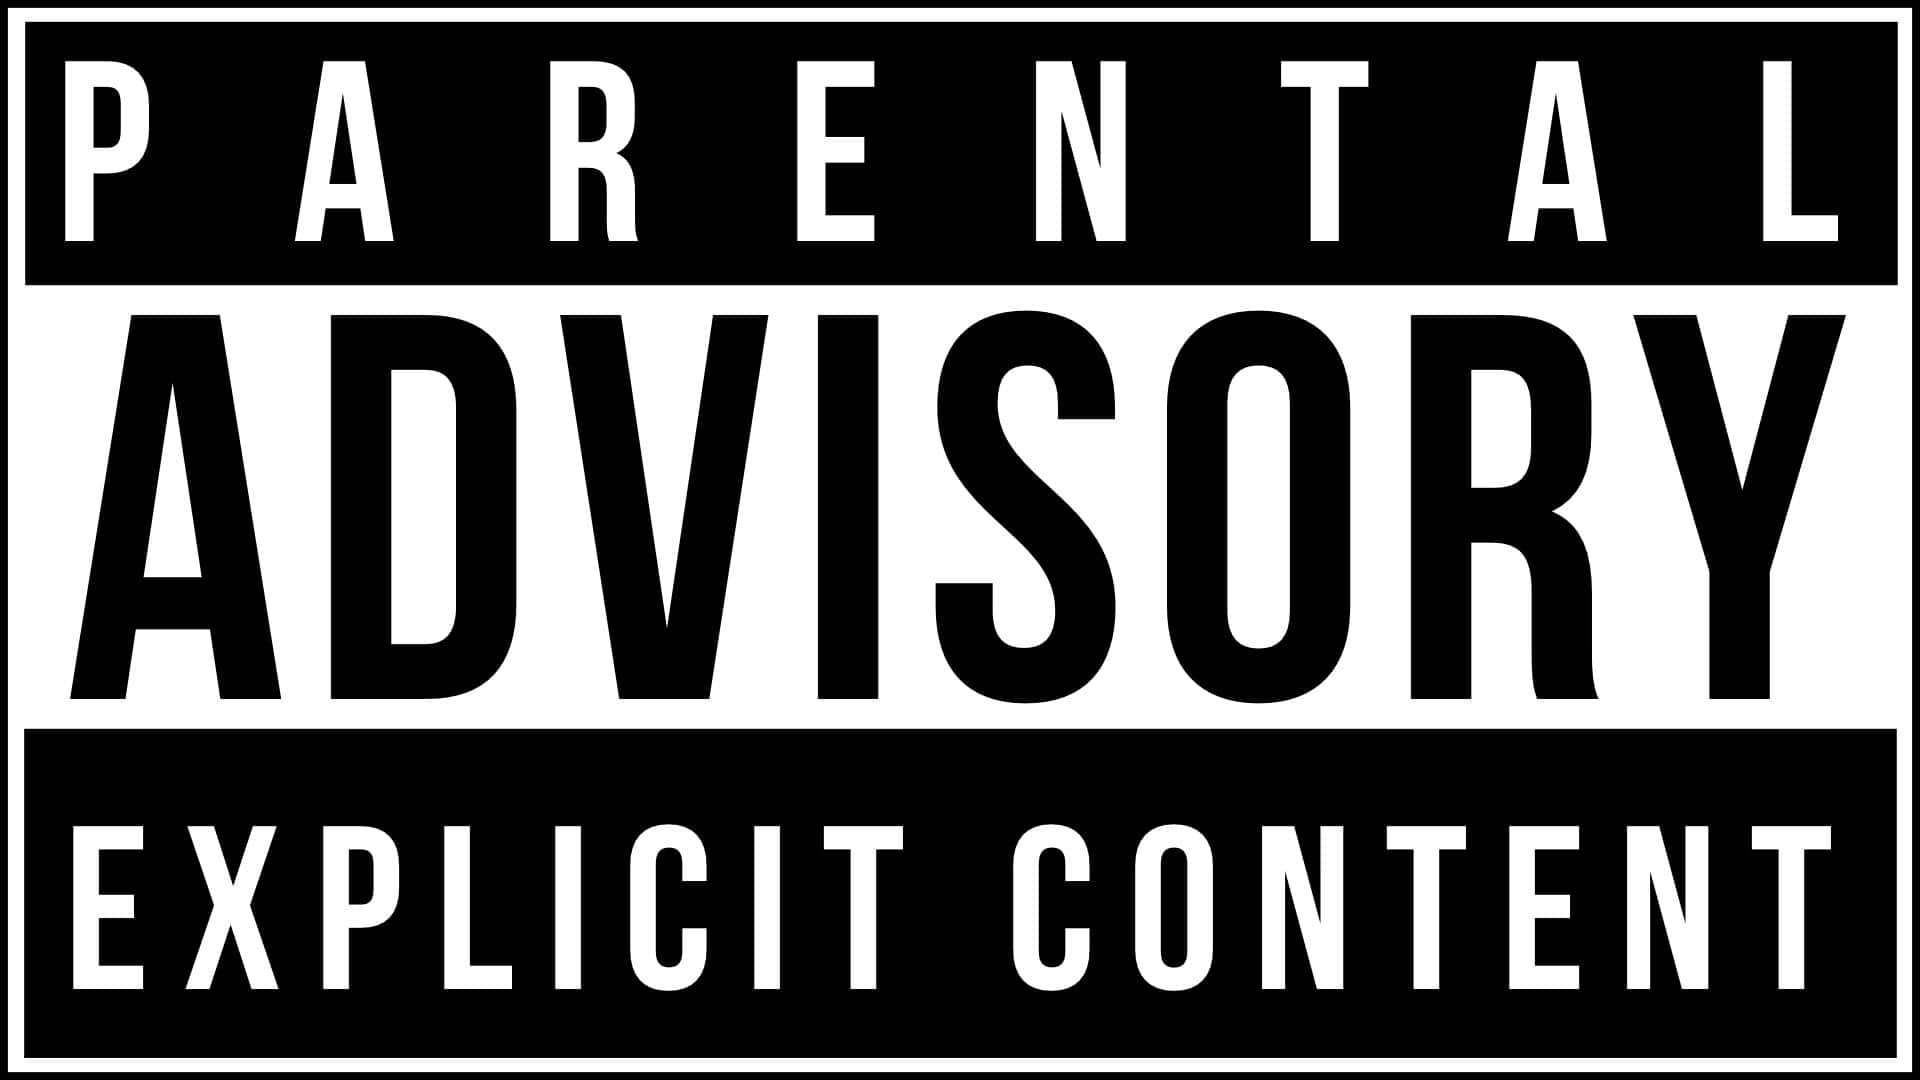 Det Parental Advisory Logo med ordene eksplicit indhold Wallpaper